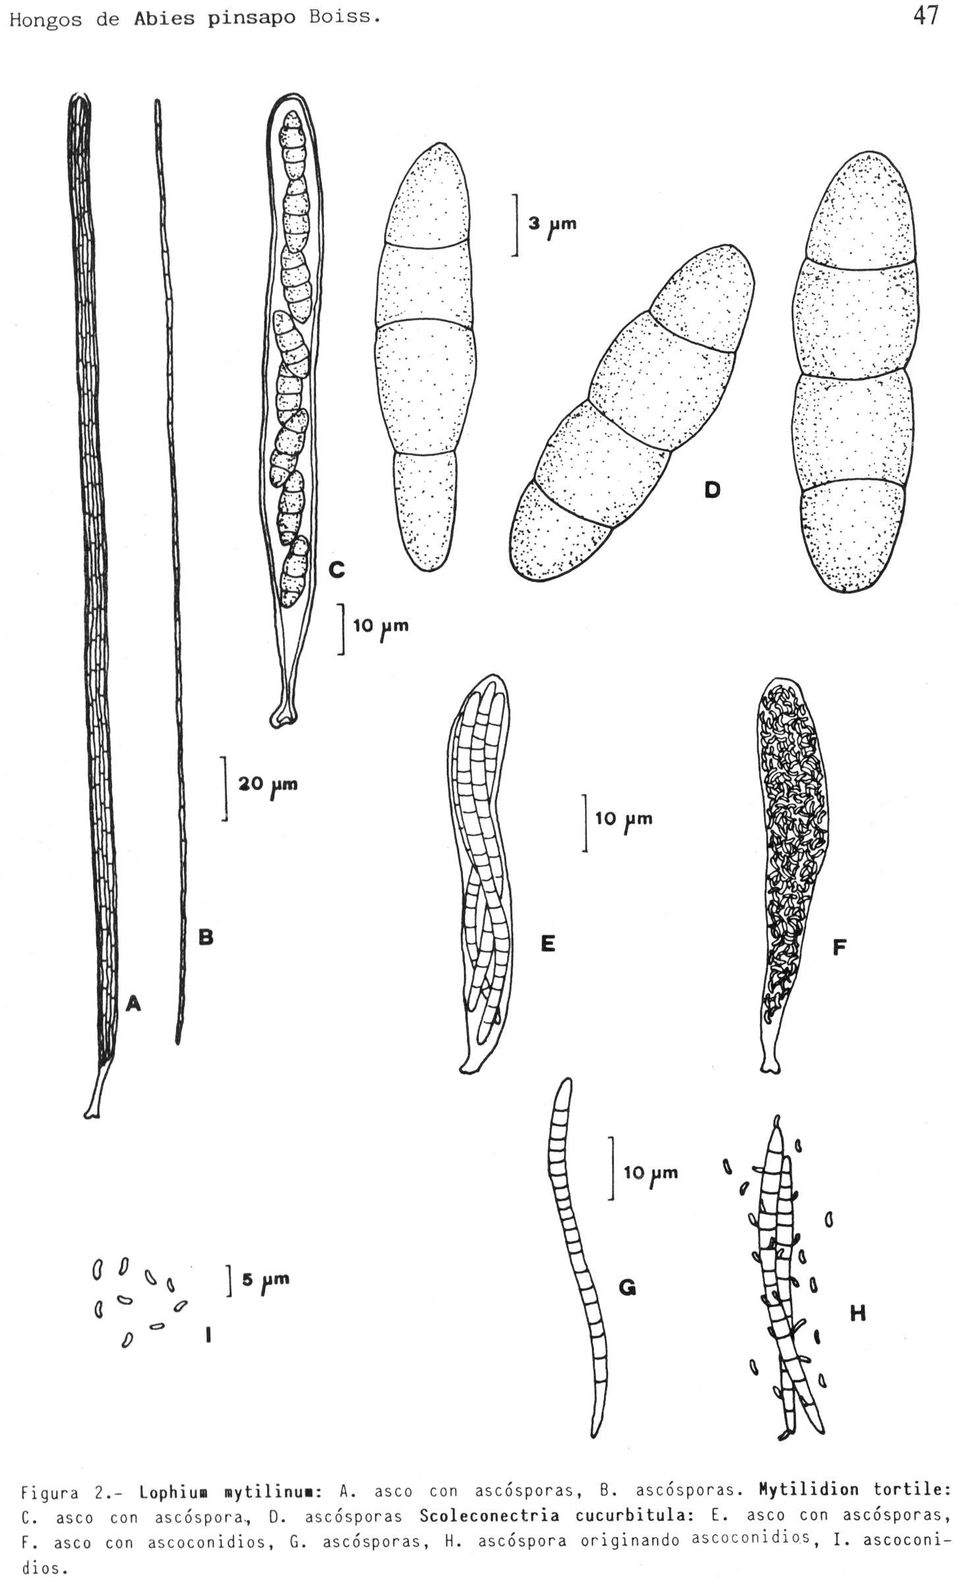 asco con ascósporas, B. ascósporas. Mytilidion tortile: C. asco con ascóspora, D.